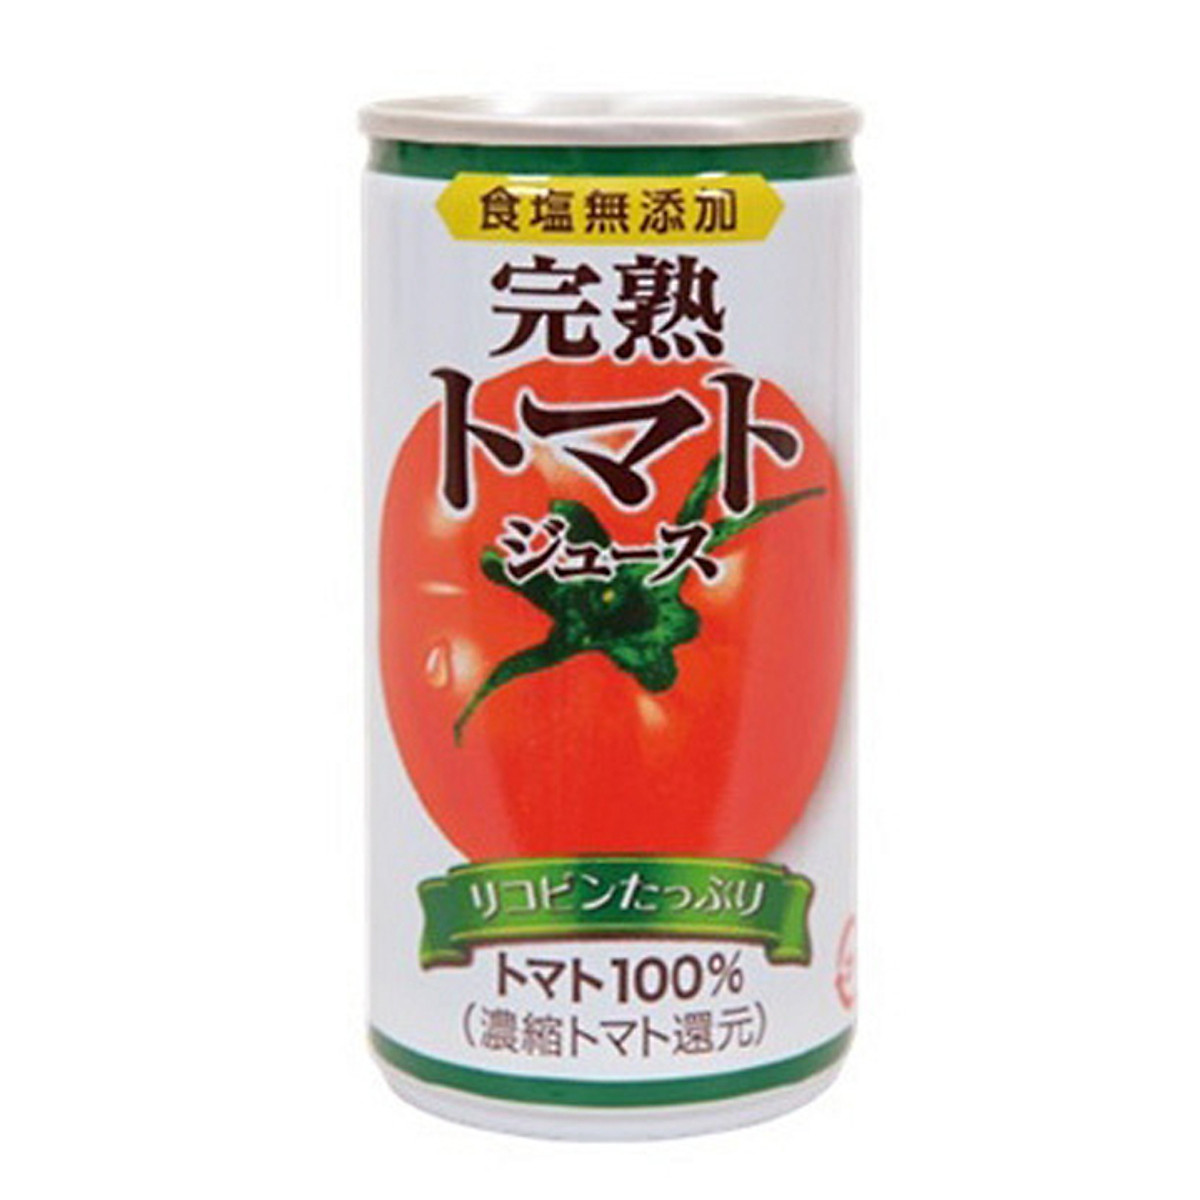 Nước ép cà chua Tominaga (không muối) 185g